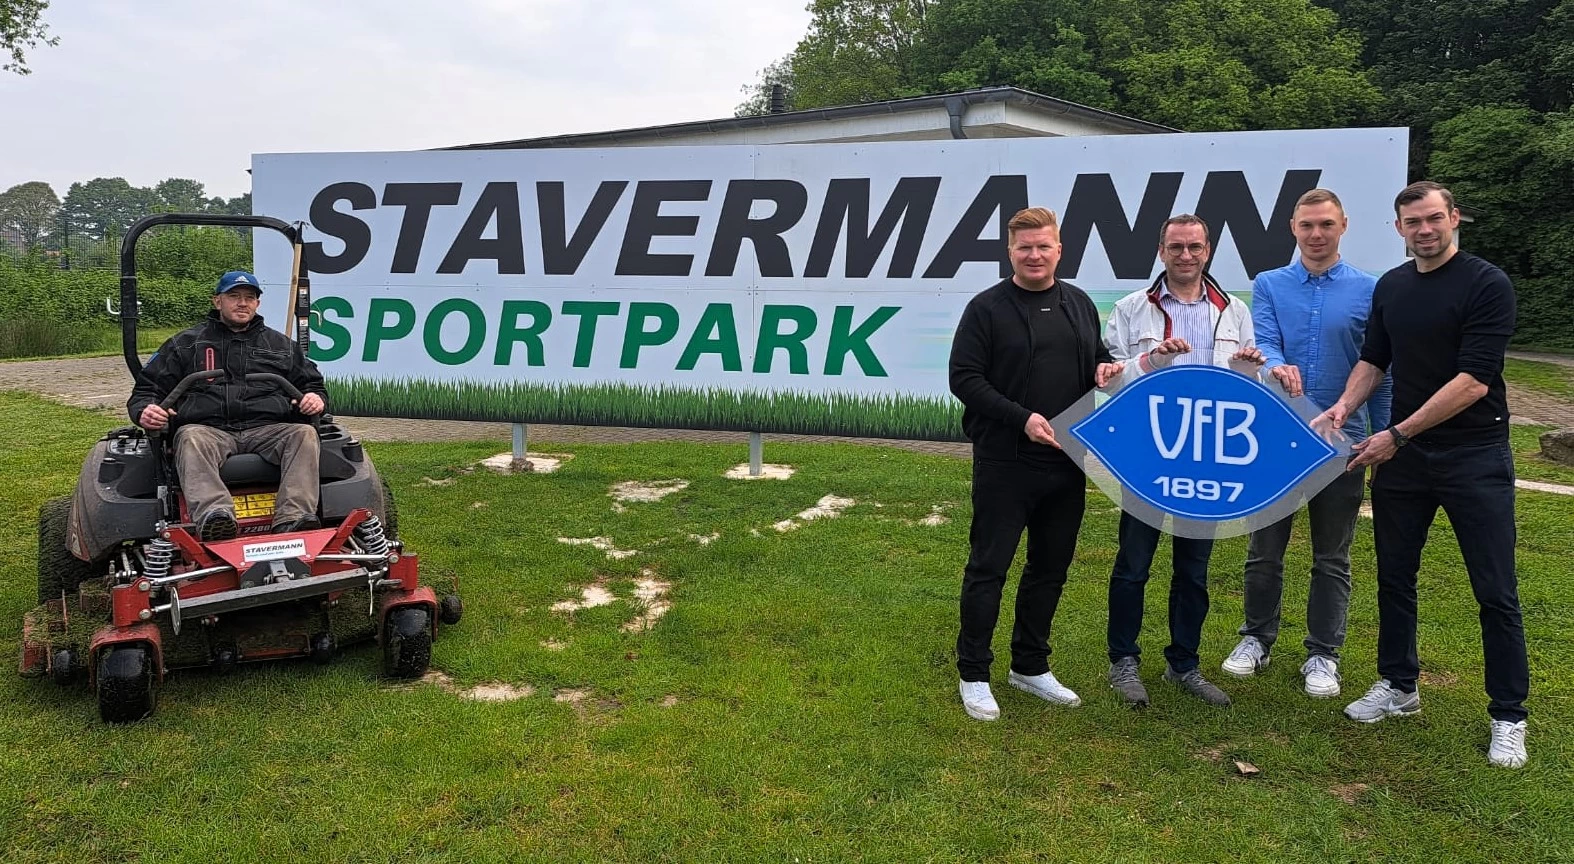 Stavermann bleibt VfB-Sponsor